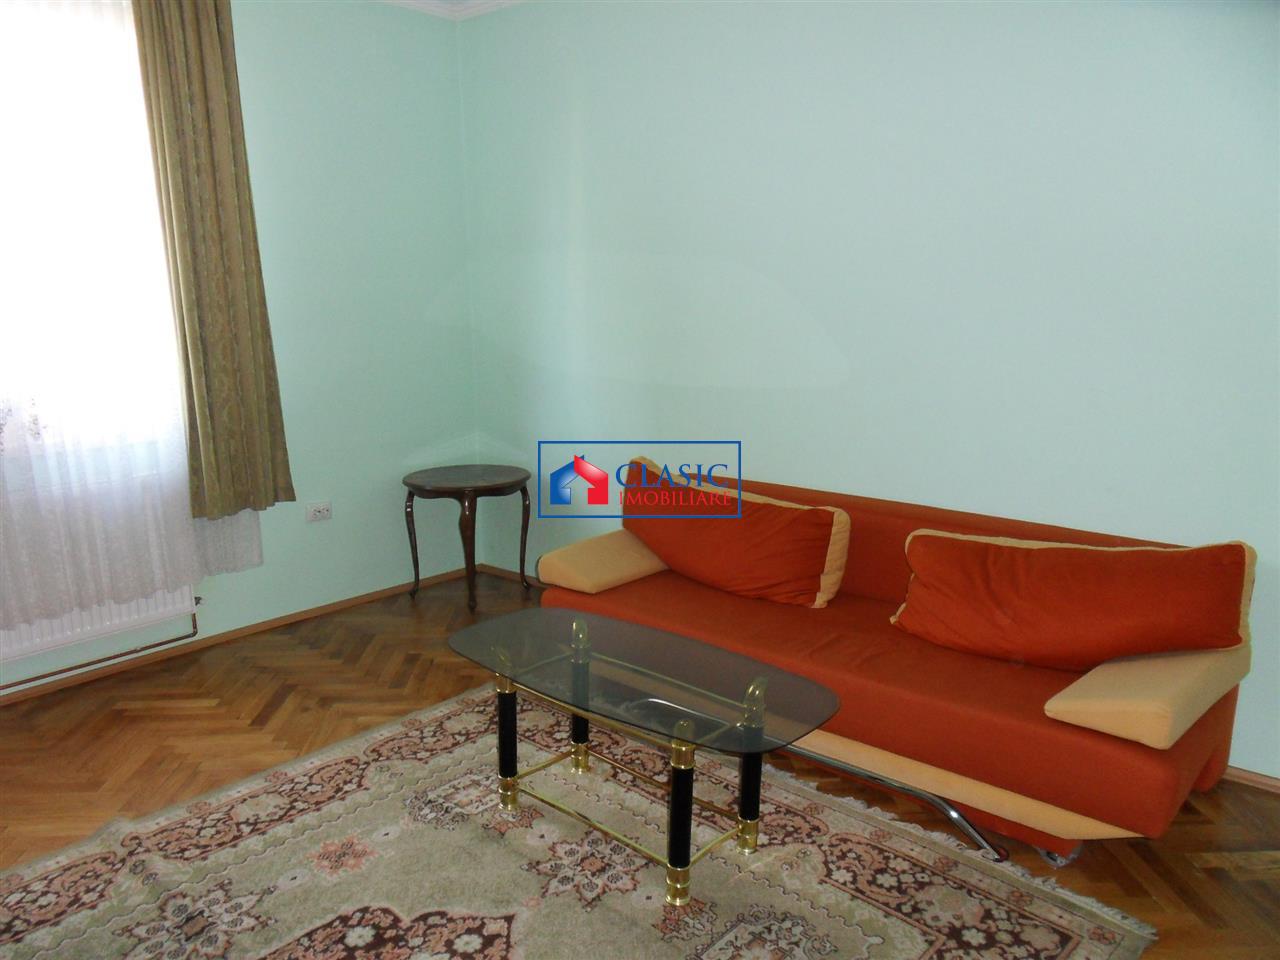 Inchiriere Apartament 3 camere in vila zona Grigorescu, Cluj Napoca